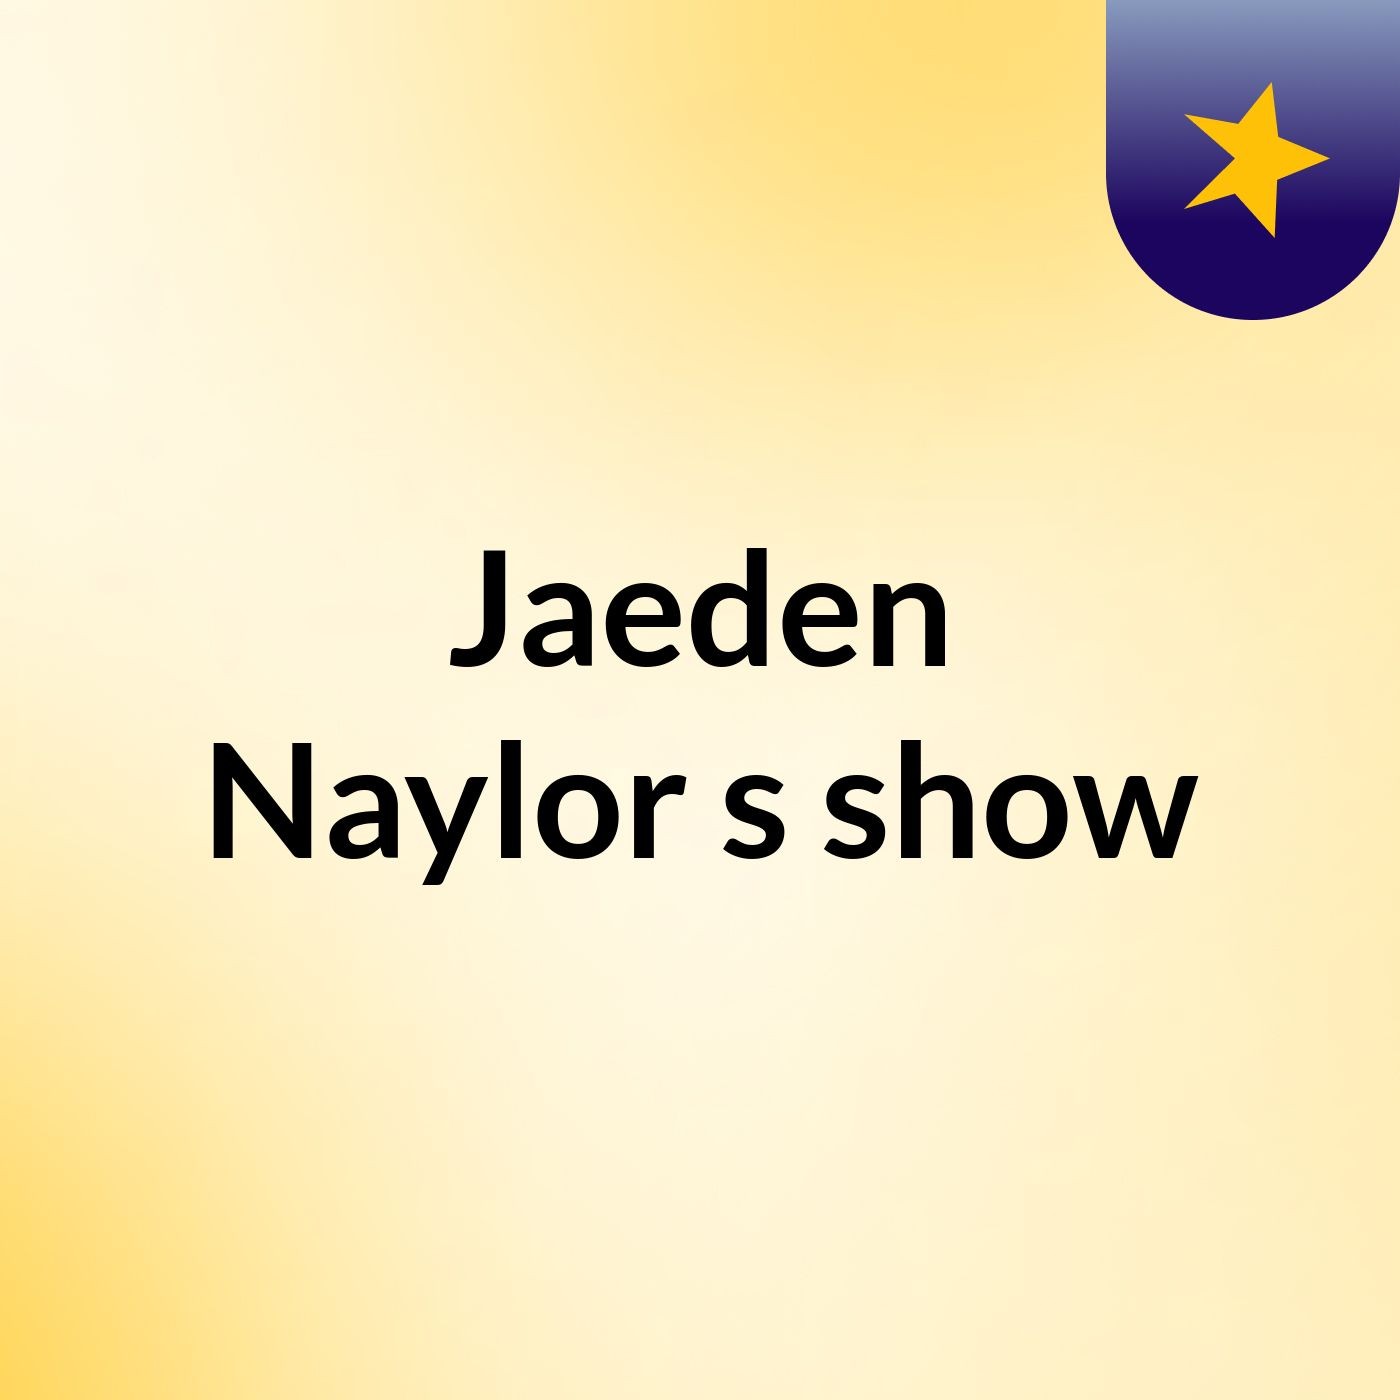 Jaeden Naylor's show